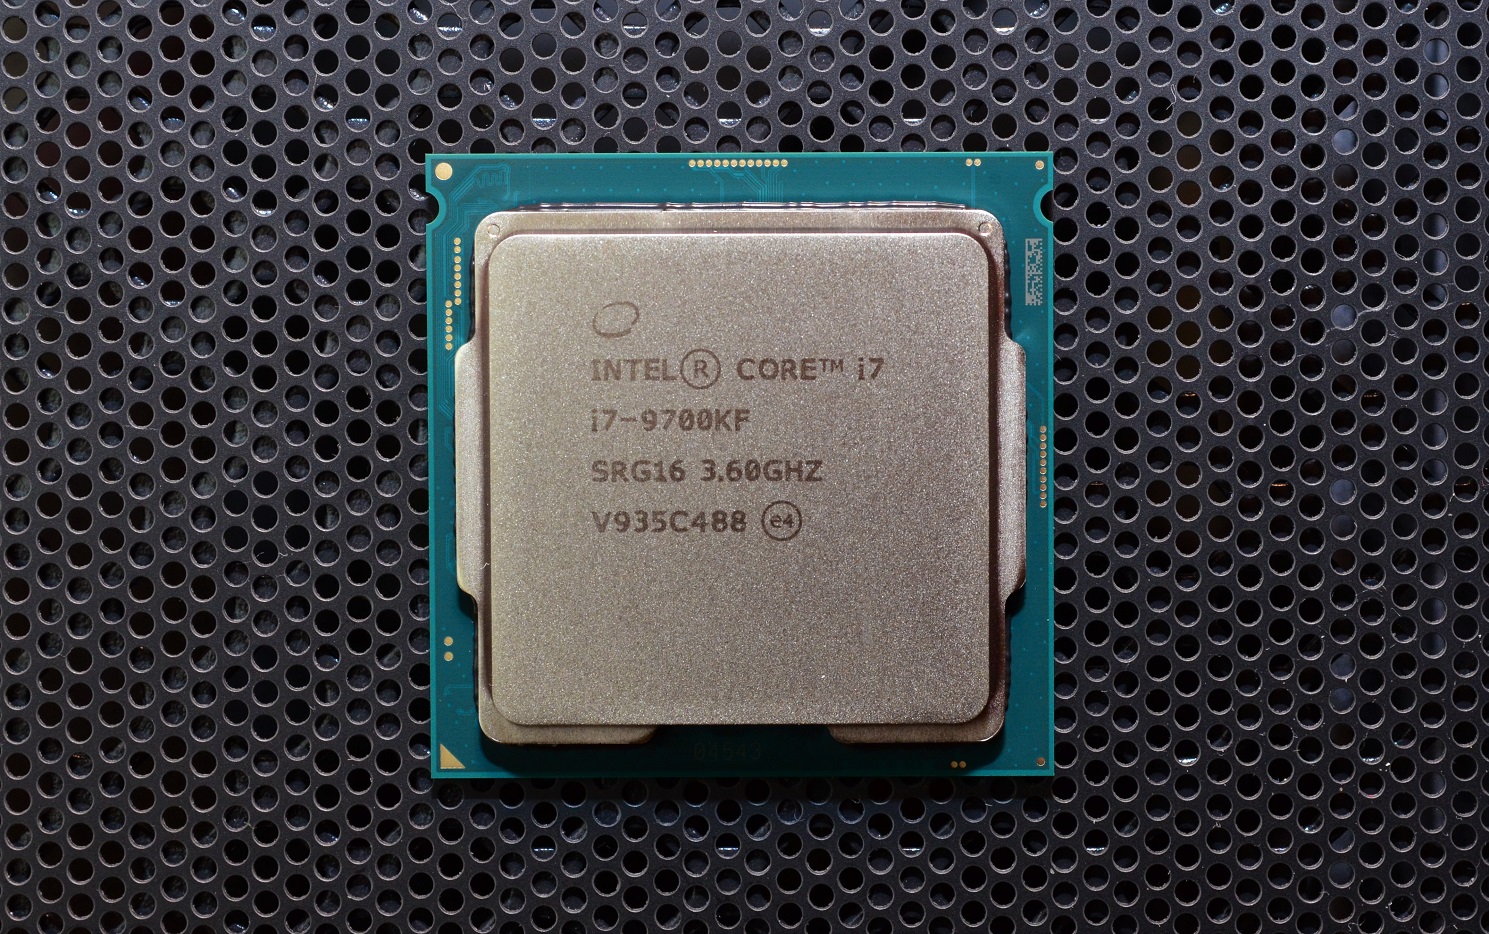 Intel r core tm купить. Core i7-9700kf. Процессор Intel Core i7-9700kf. Процессор Intel Core i7-9700kf, Box. Процессор Intel Core i7-9700kf OEM.